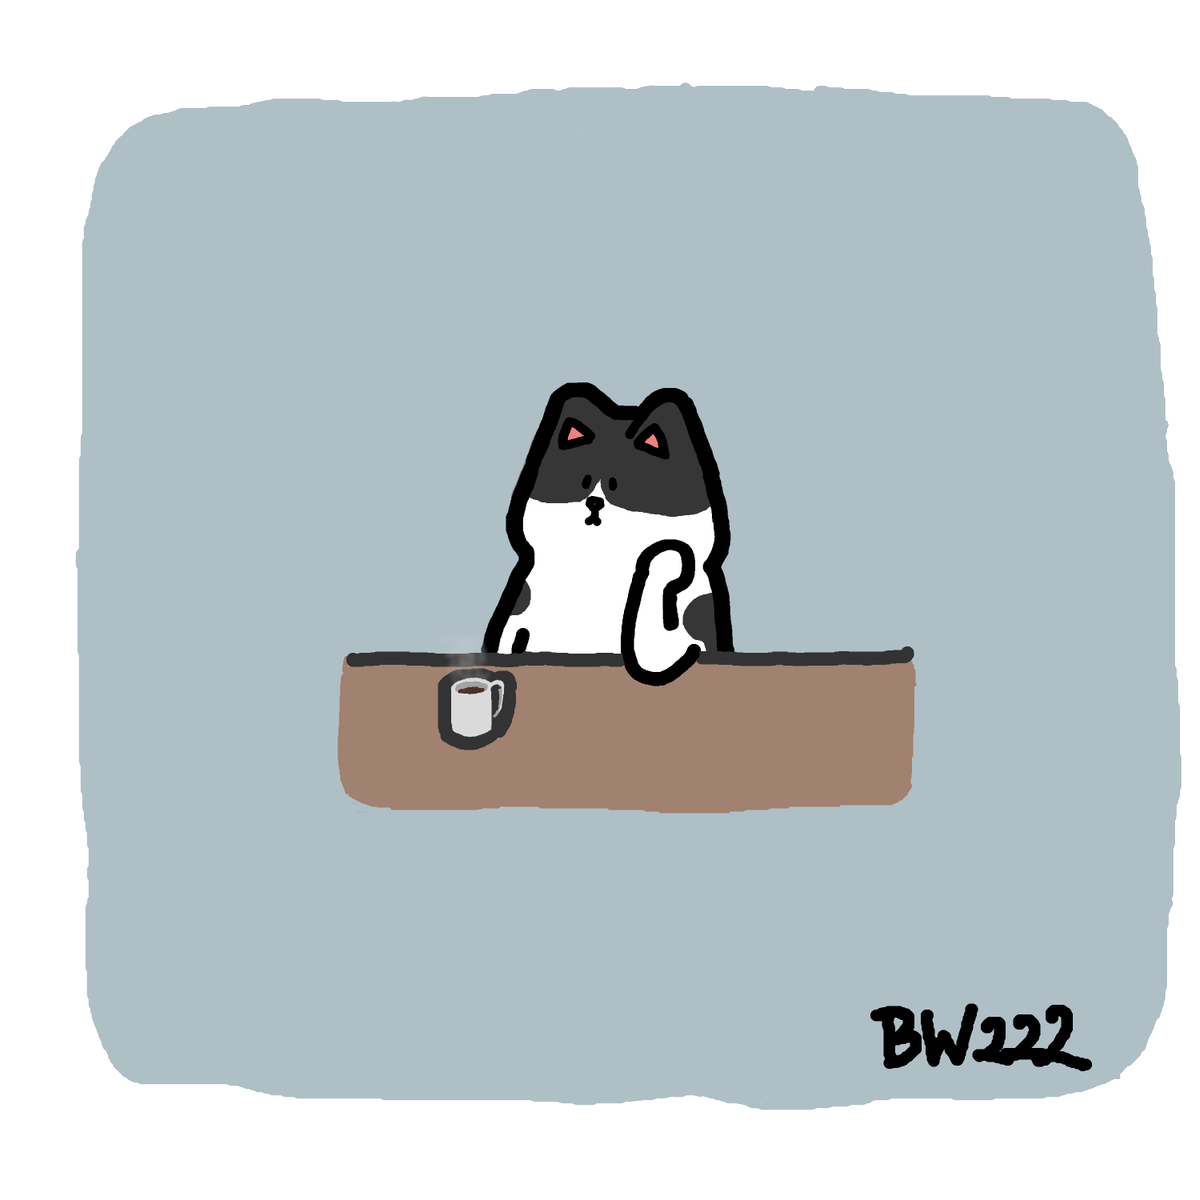 くろもり ぼんやりしているネコさんを描きました ホットコーヒー たまにため息 冬の創作クラスタフォロー祭り イラスト ゆるいイラスト イラスト好きさんと繋がりたい 創作 猫 イラスト練習中